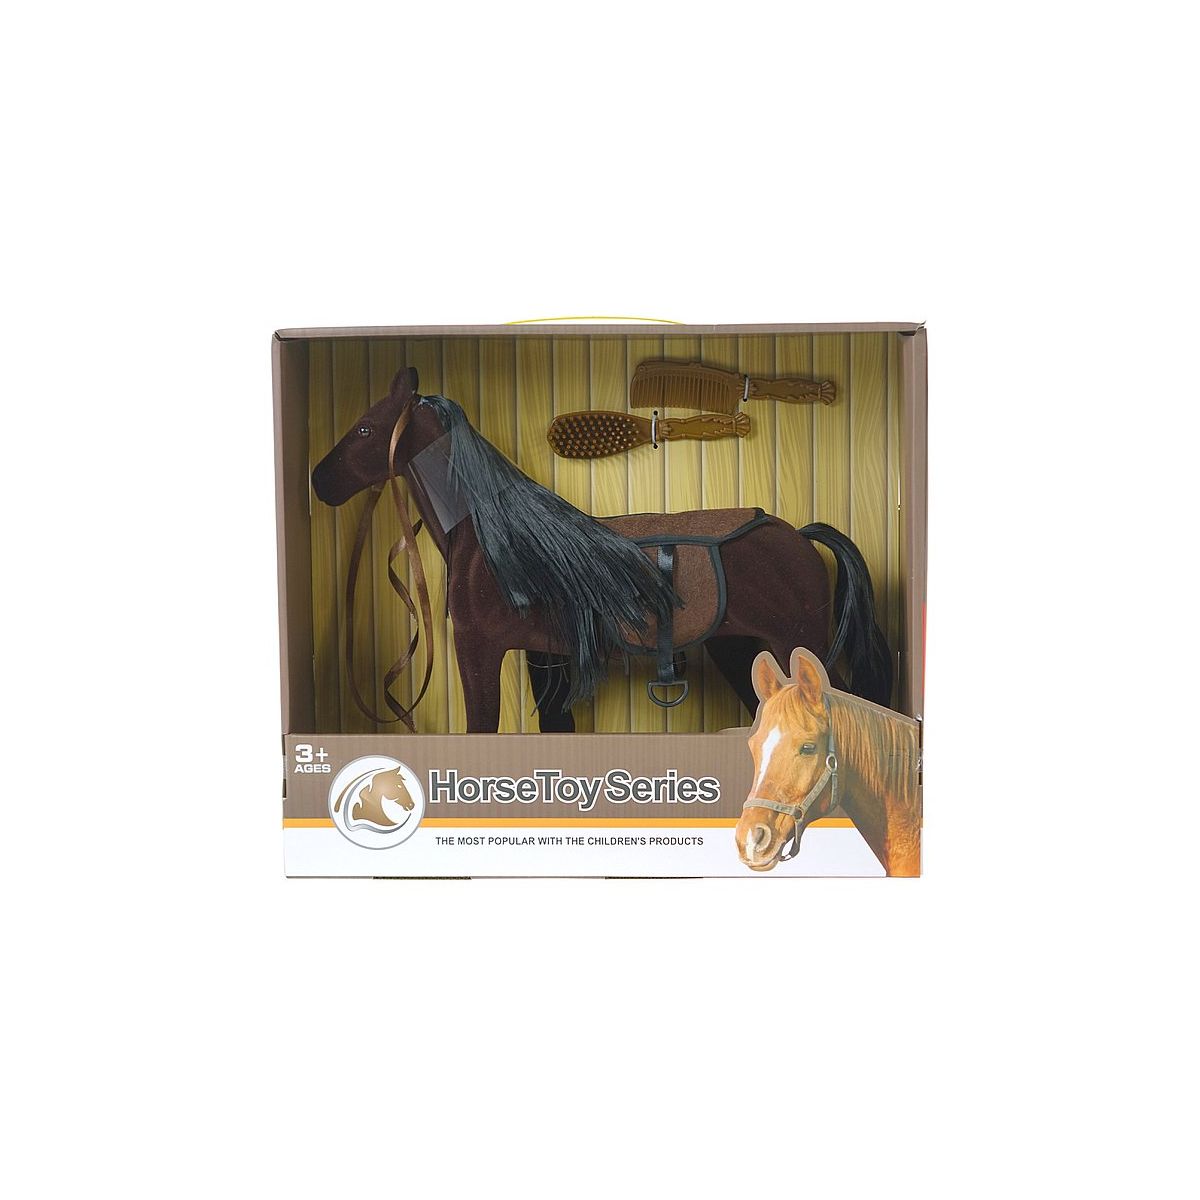 Figurka Adar koń z grzywą 40cm (586352)